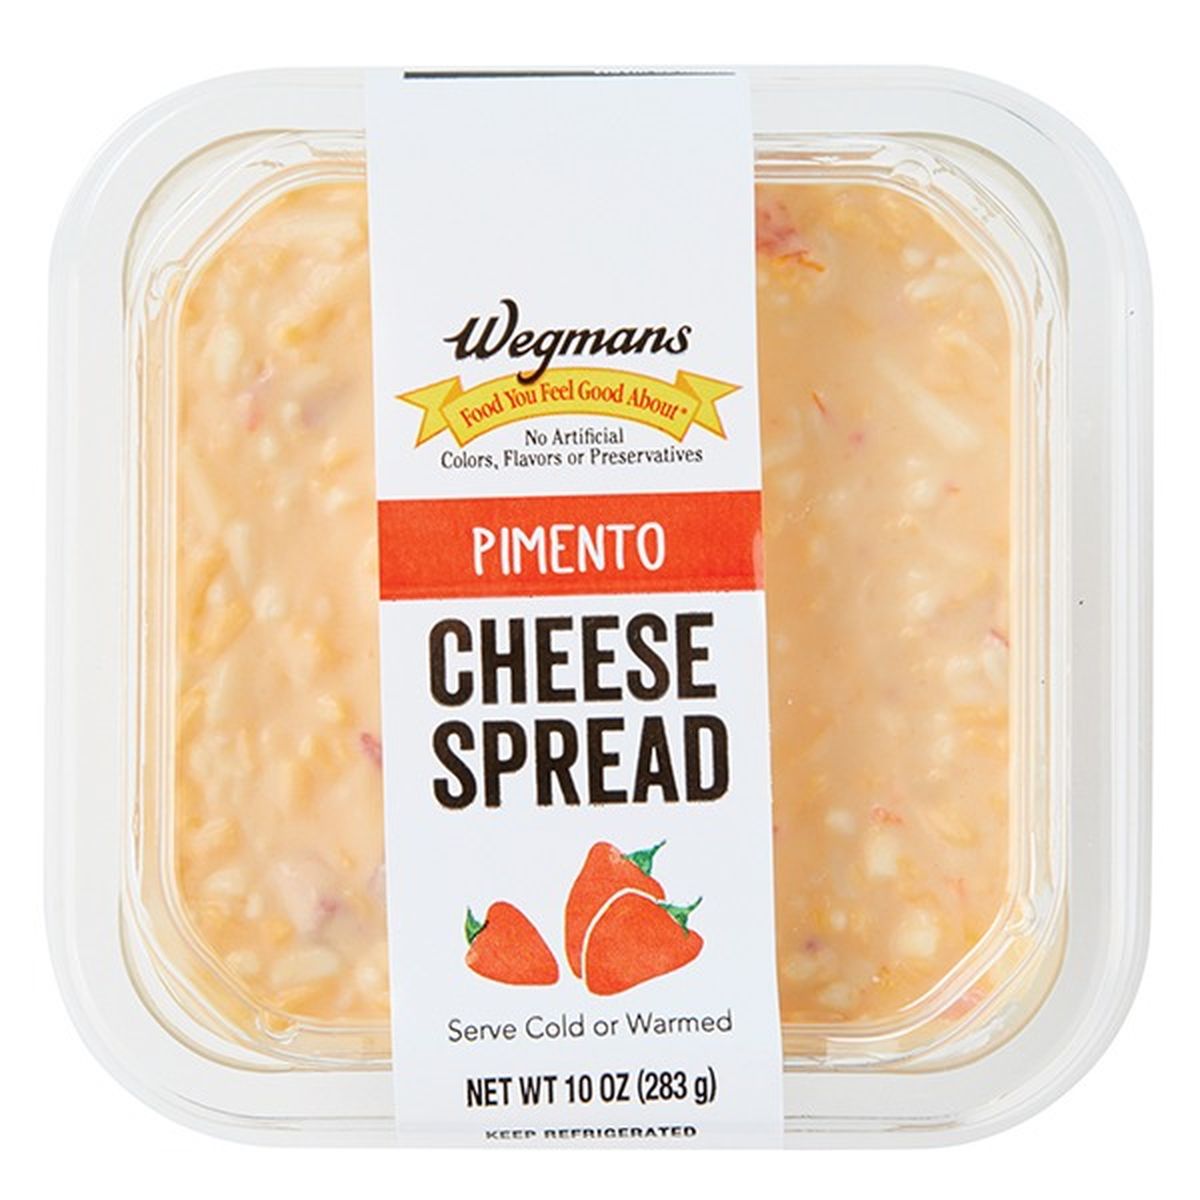 Calories in Wegmans Pimento Cheese Spread